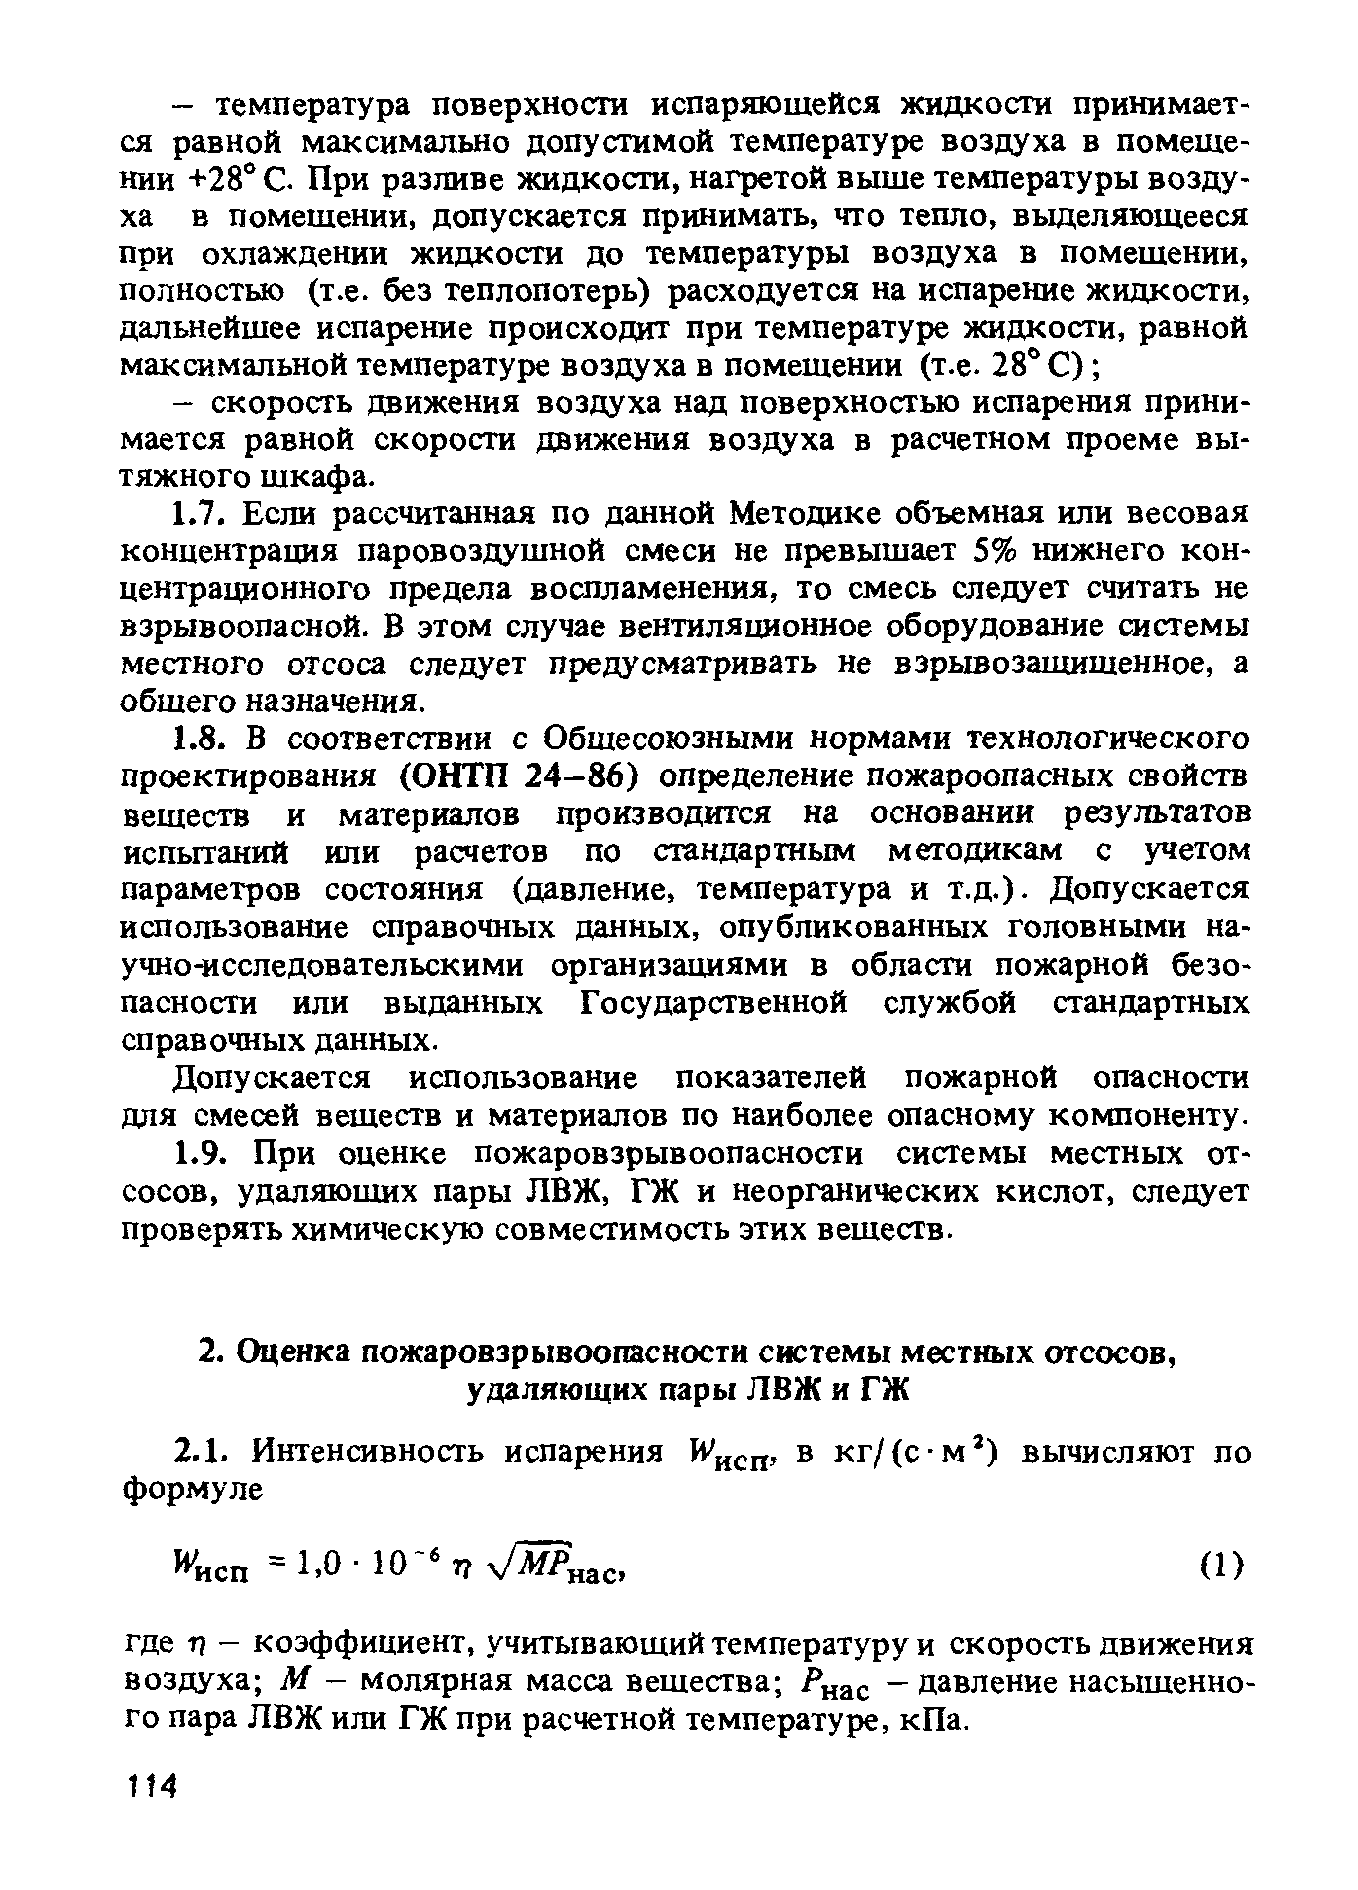 ППБО 105-87